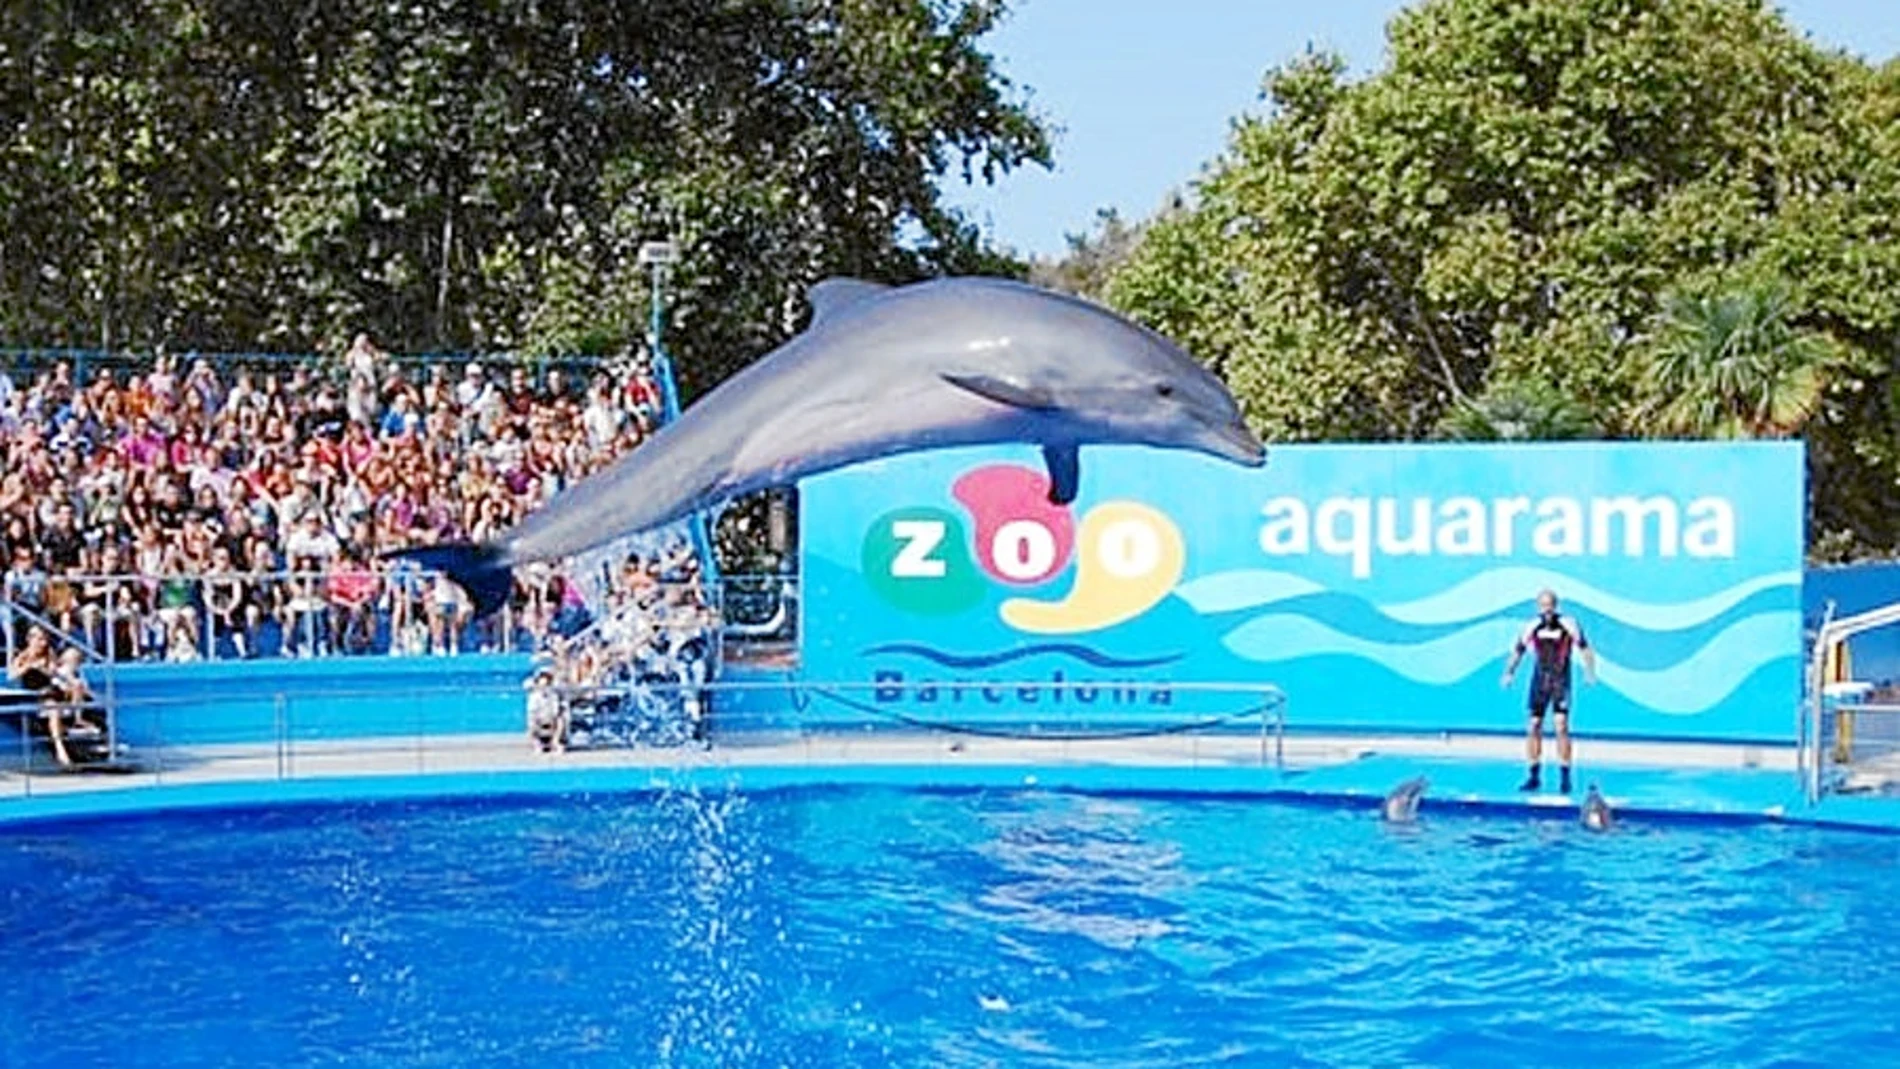 El delfinario del Zoo desaparecerá, según las directrices de la nueva dirección.